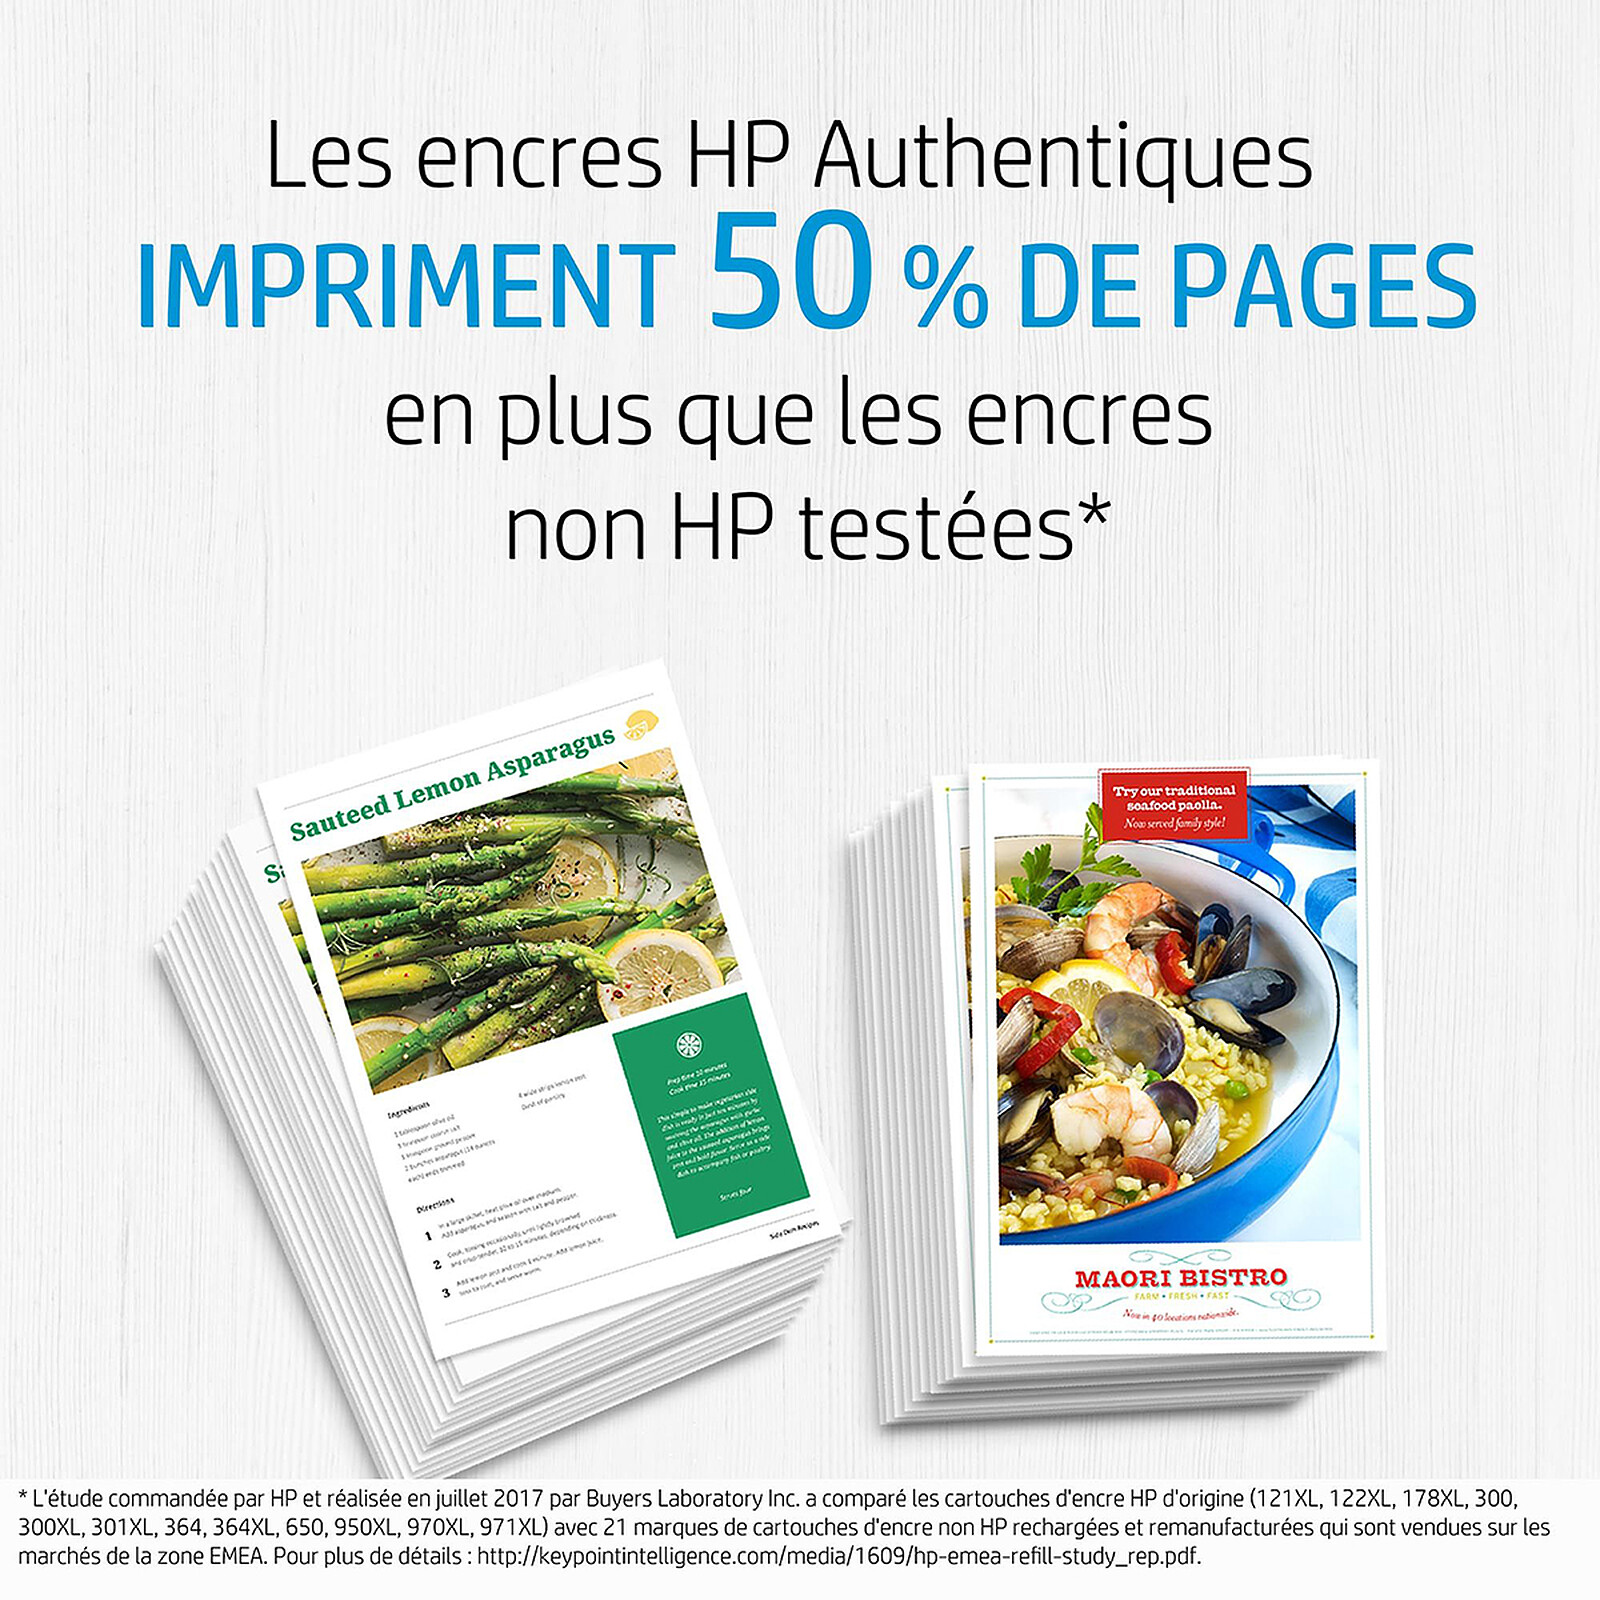 HP 903 Cartouches d'encre d'origine pour HP Officejet 6950, HP